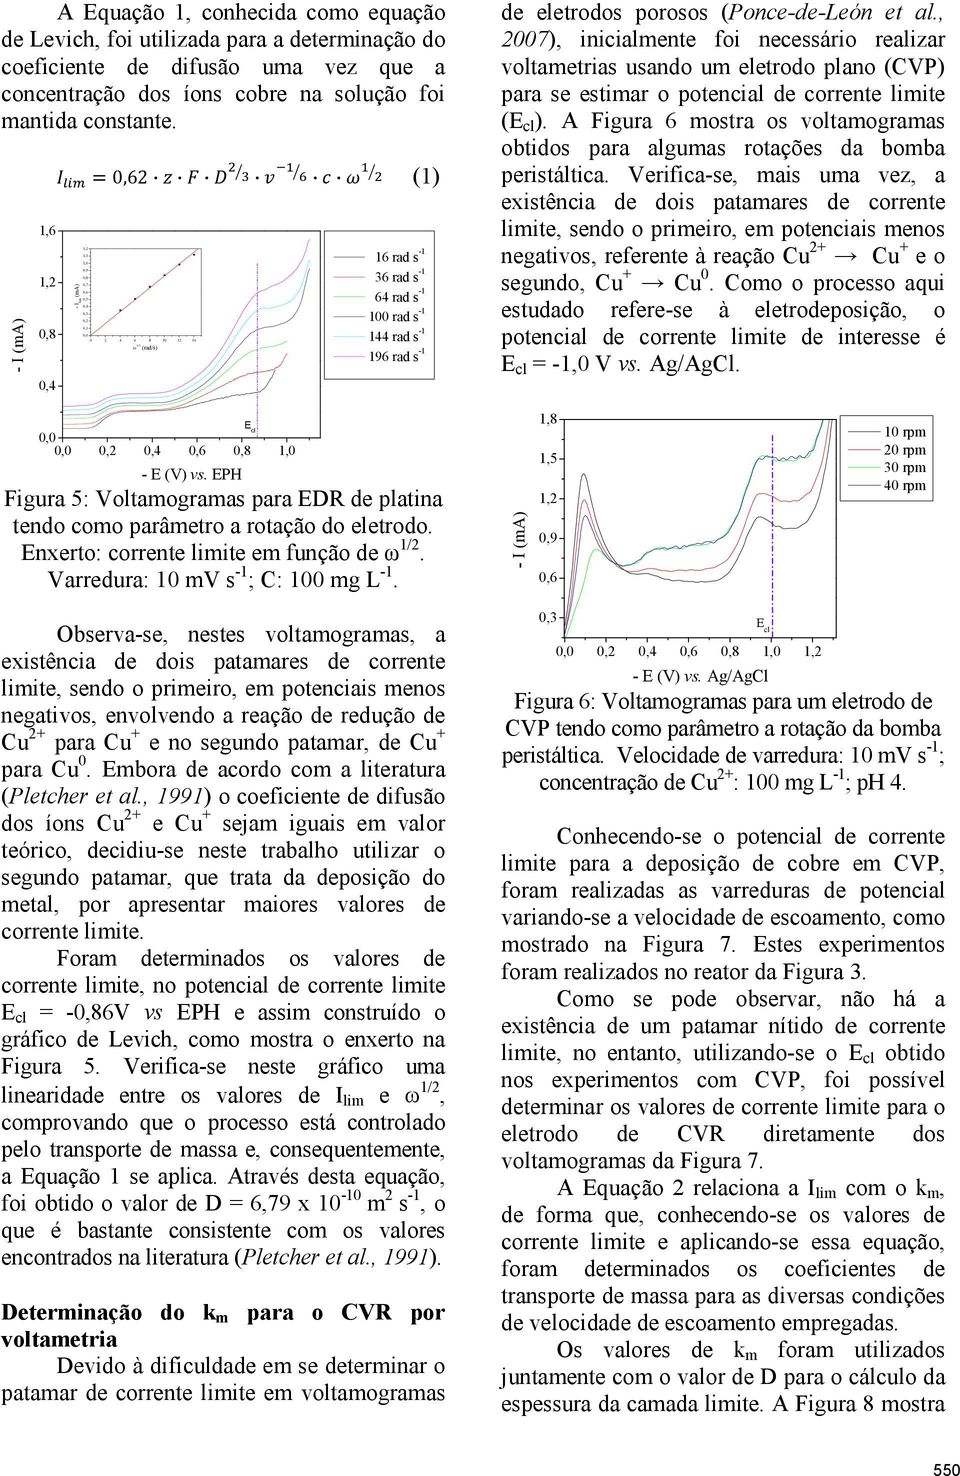 porosos (Ponce-de-León et al., 2007), inicialmente foi necessário realizar voltametrias usando um eletrodo plano (CVP) para se estimar o potencial de corrente limite (E cl ).